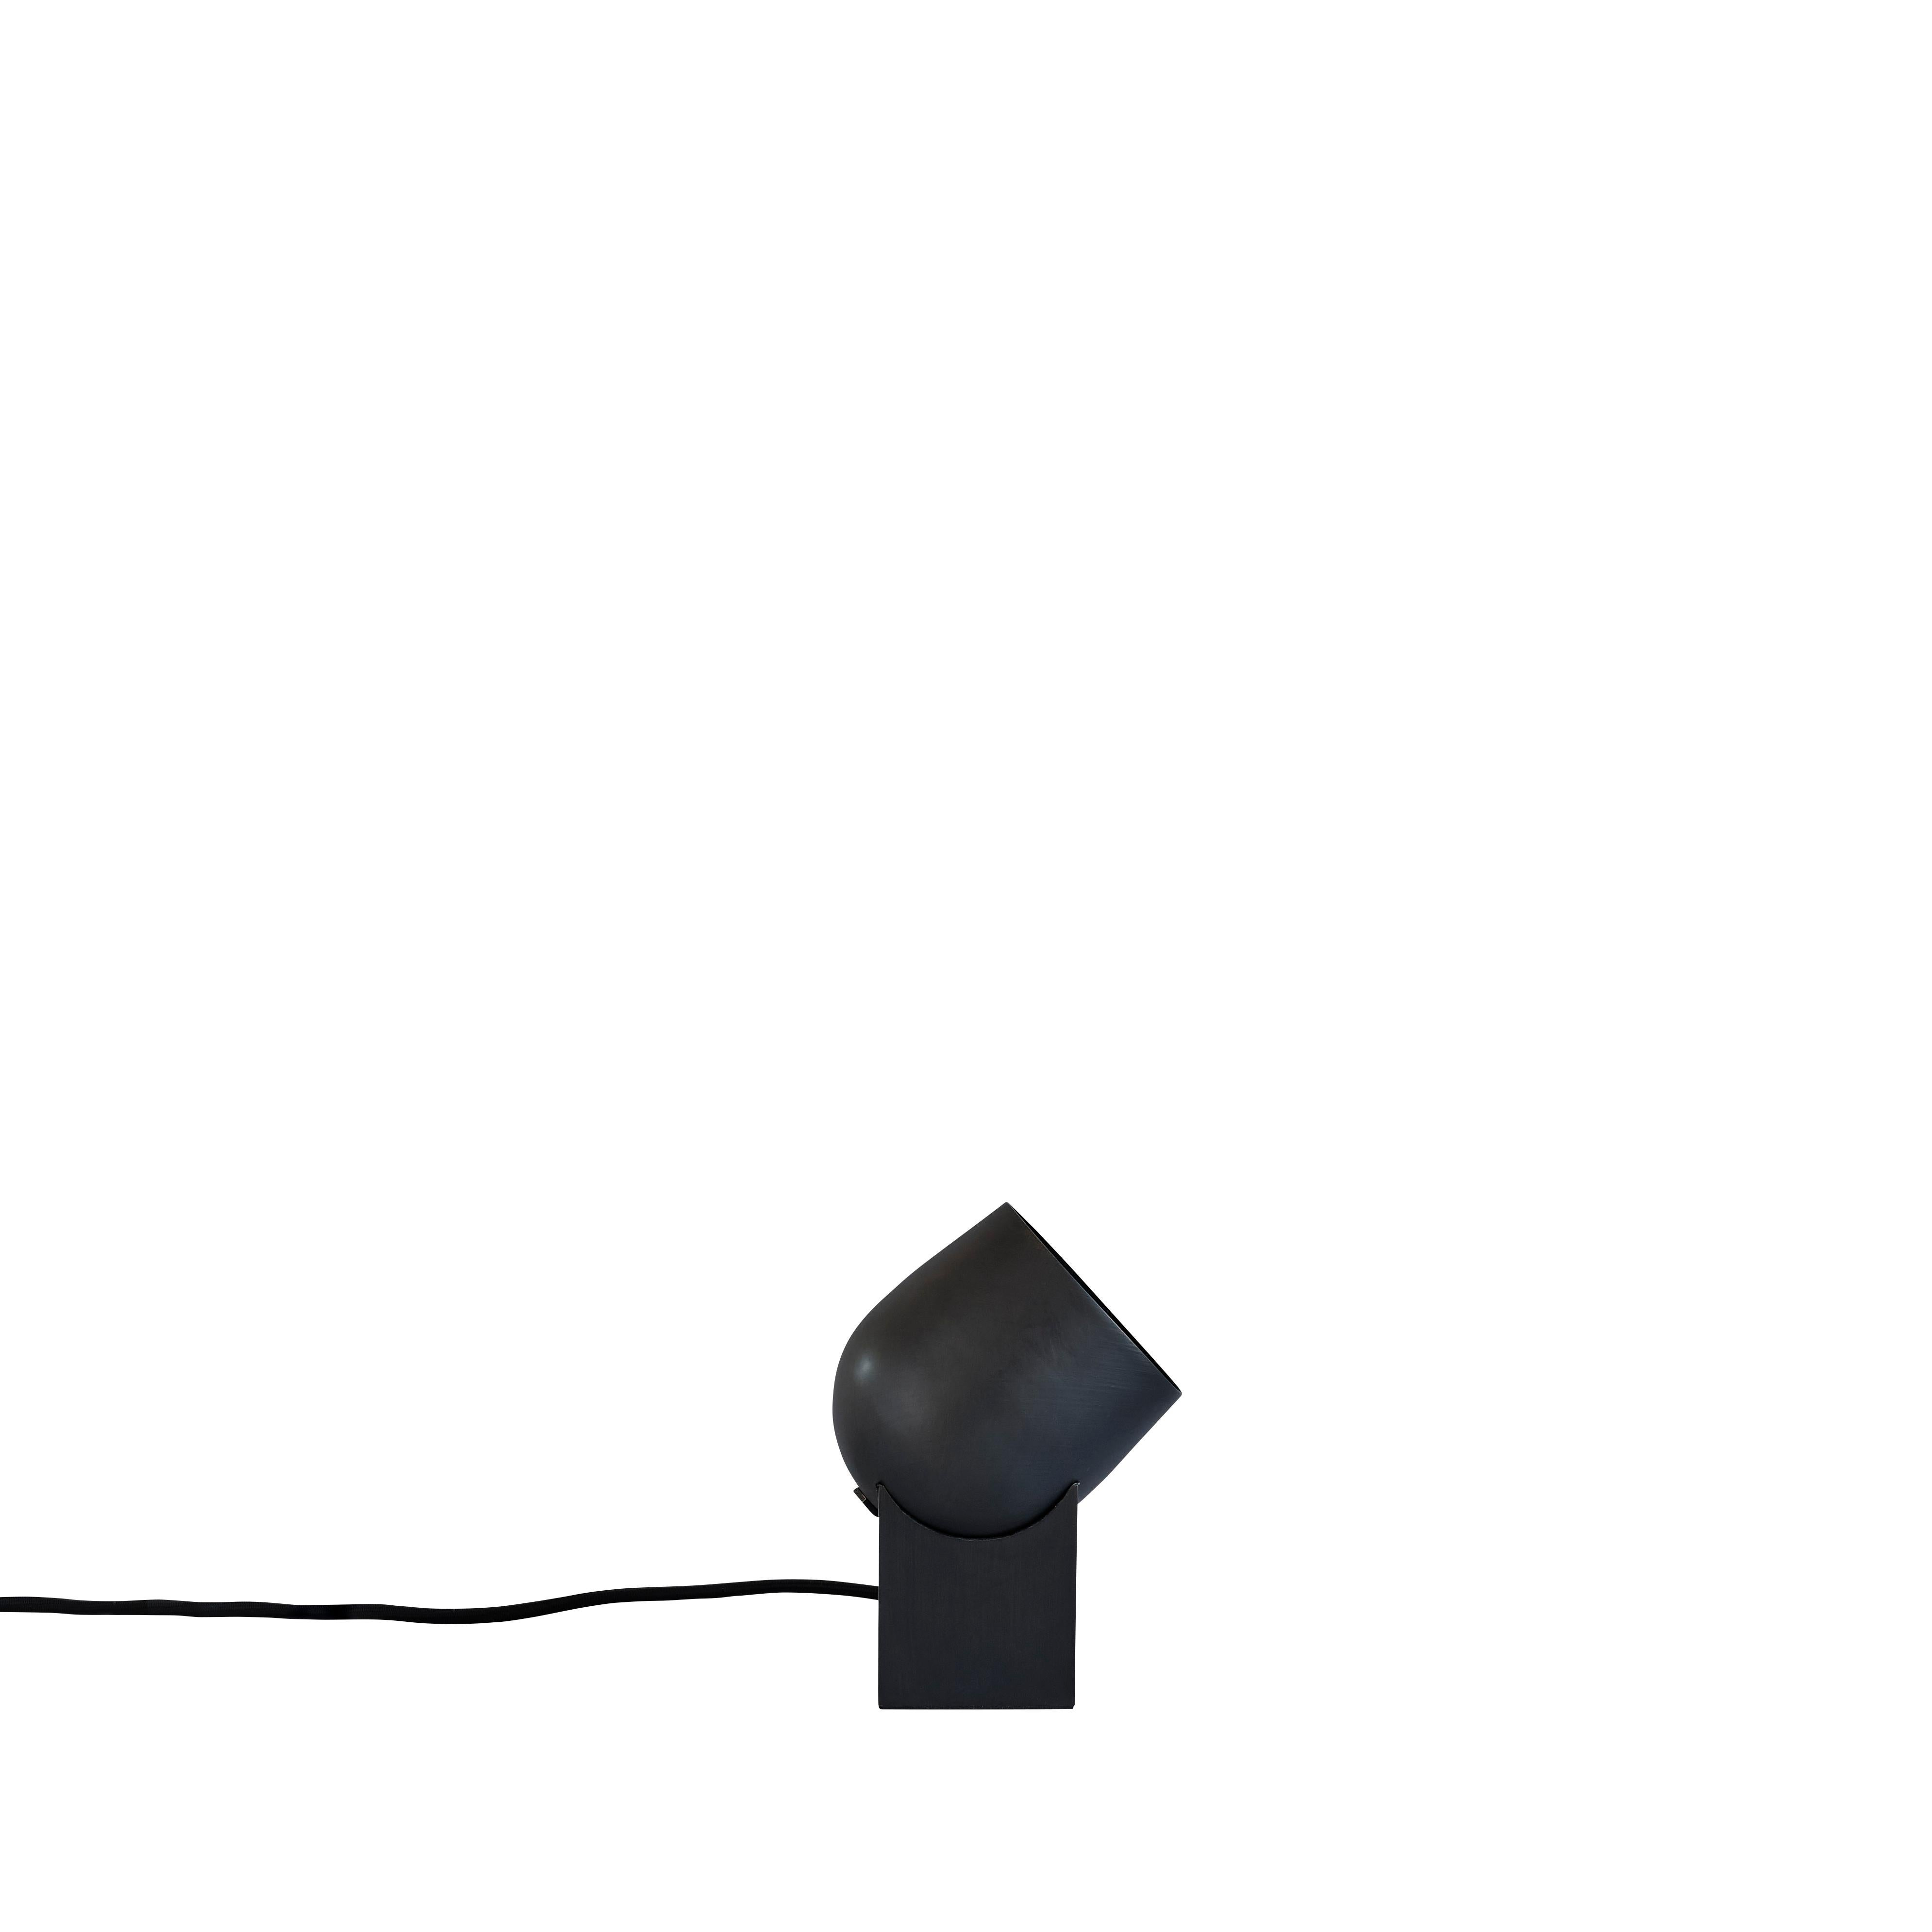 Pivot tischlampe von 101 Copenhagen
Entworfen von Kristian Sofus Hansen & Tommy Hyldahl.
Abmessungen: L 10,5 x B 10,5 x H 19 cm
Kabellänge: 190 CM

MATERIALIEN: Metall: Metall plattiert / Schwarz gebrannt
Kabel: Stoffummanteltes Kabel mit